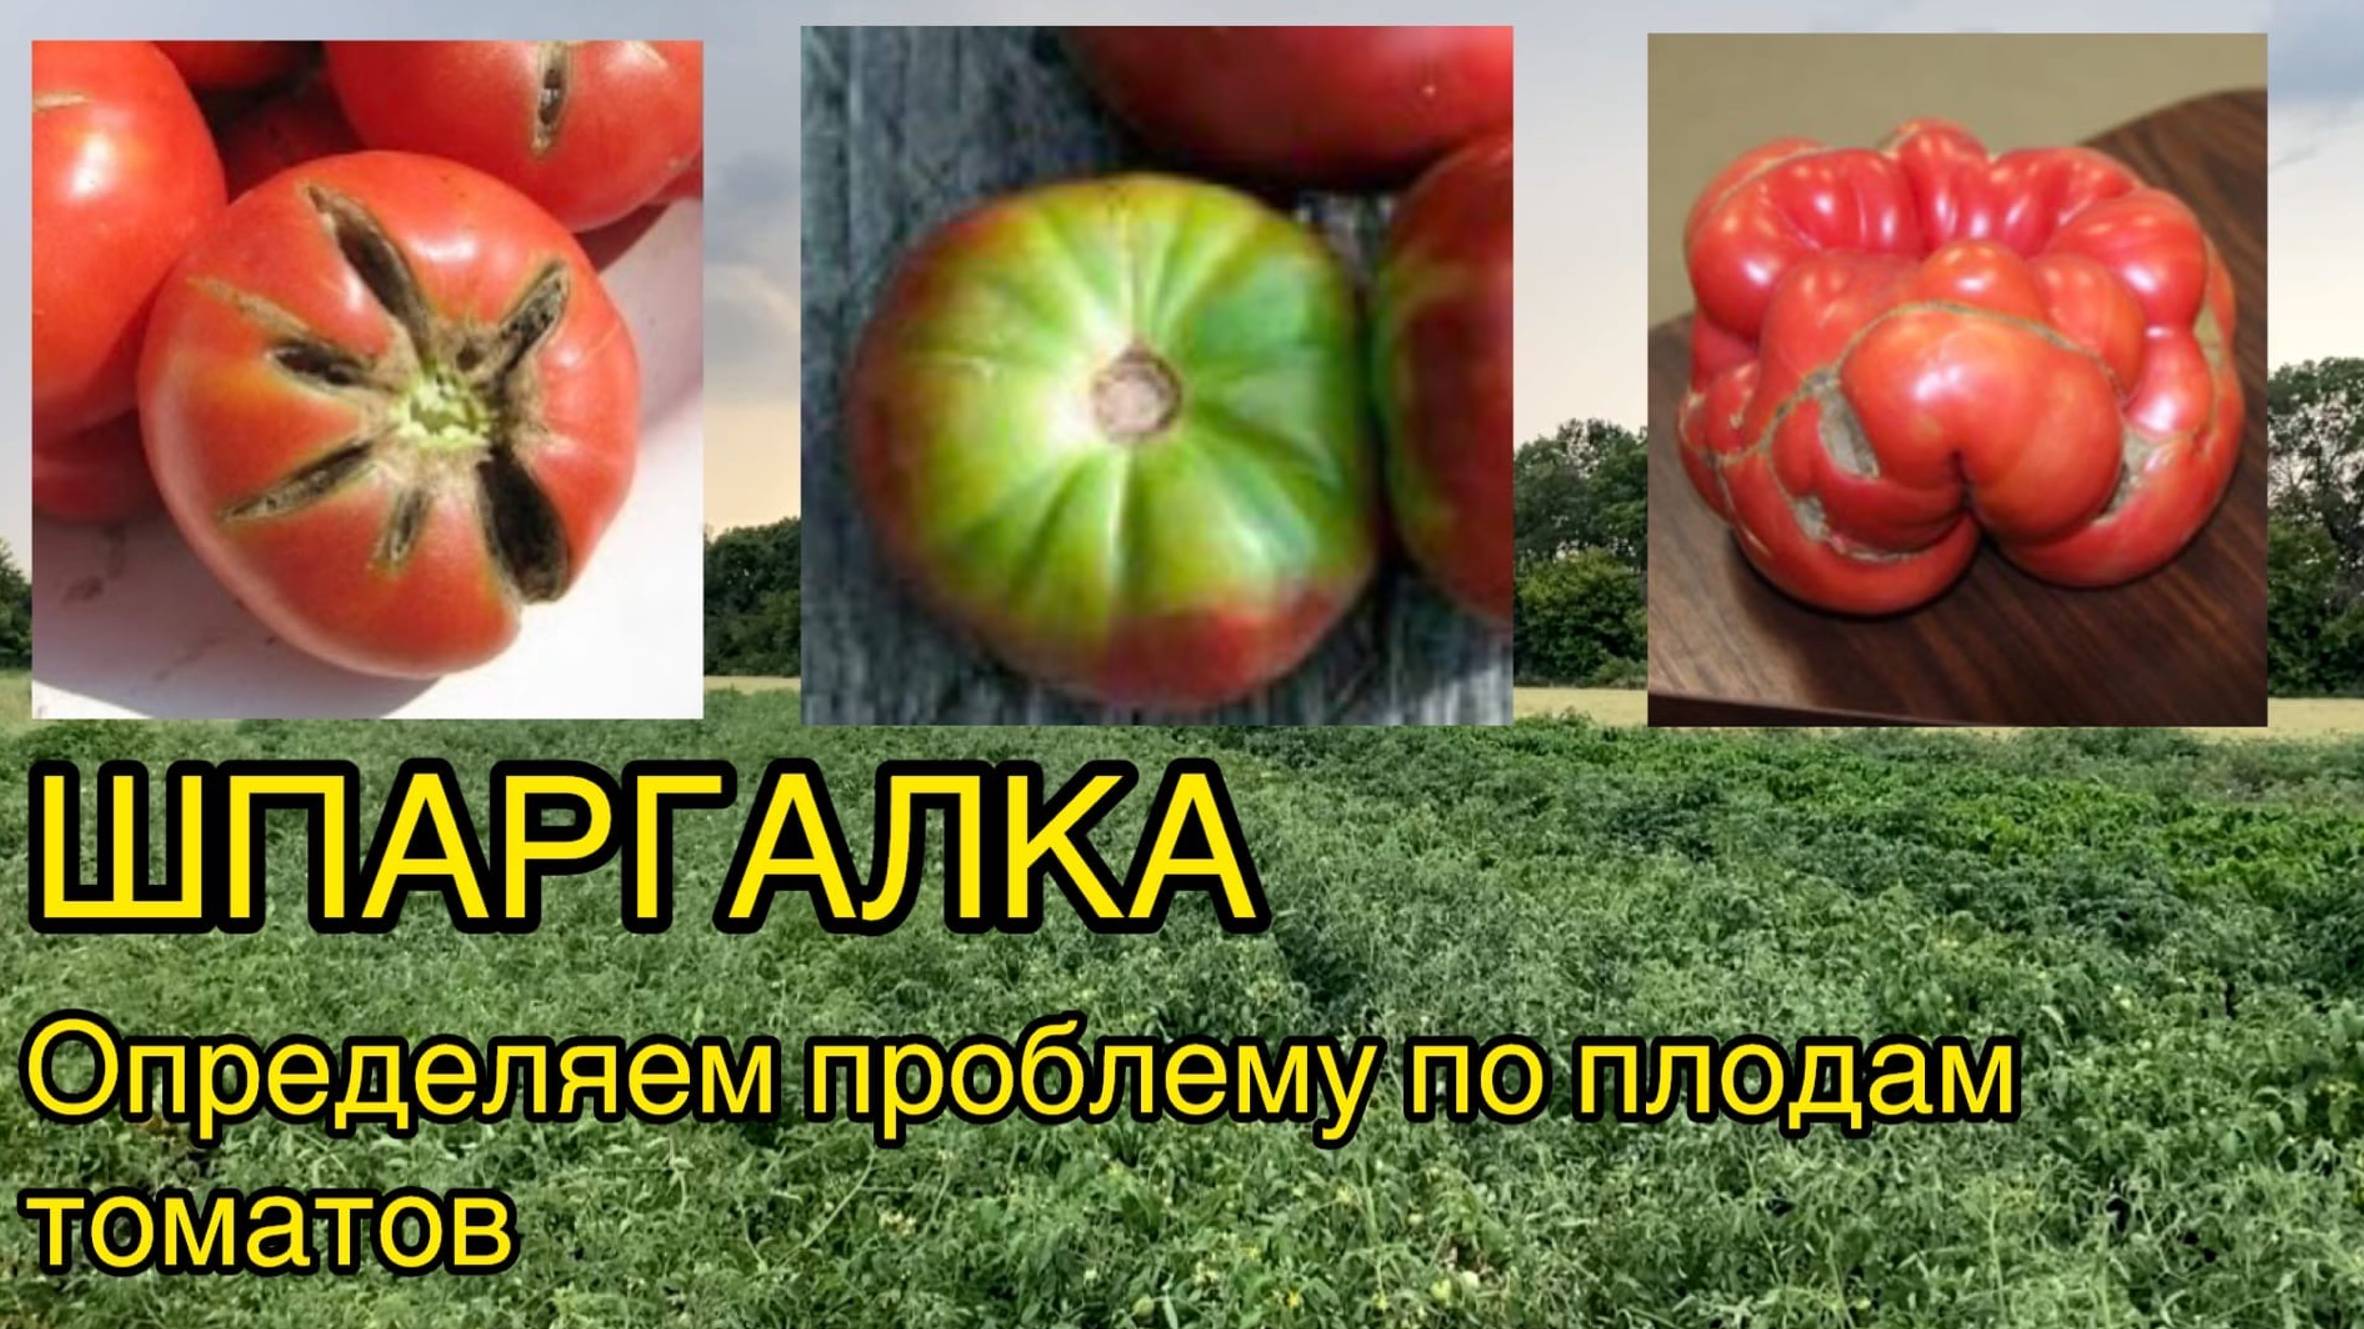 Шпаргалка по томатам. Болезни плодов и способы их решения. (Трещины, желтые плечики, гнили и т.д.)